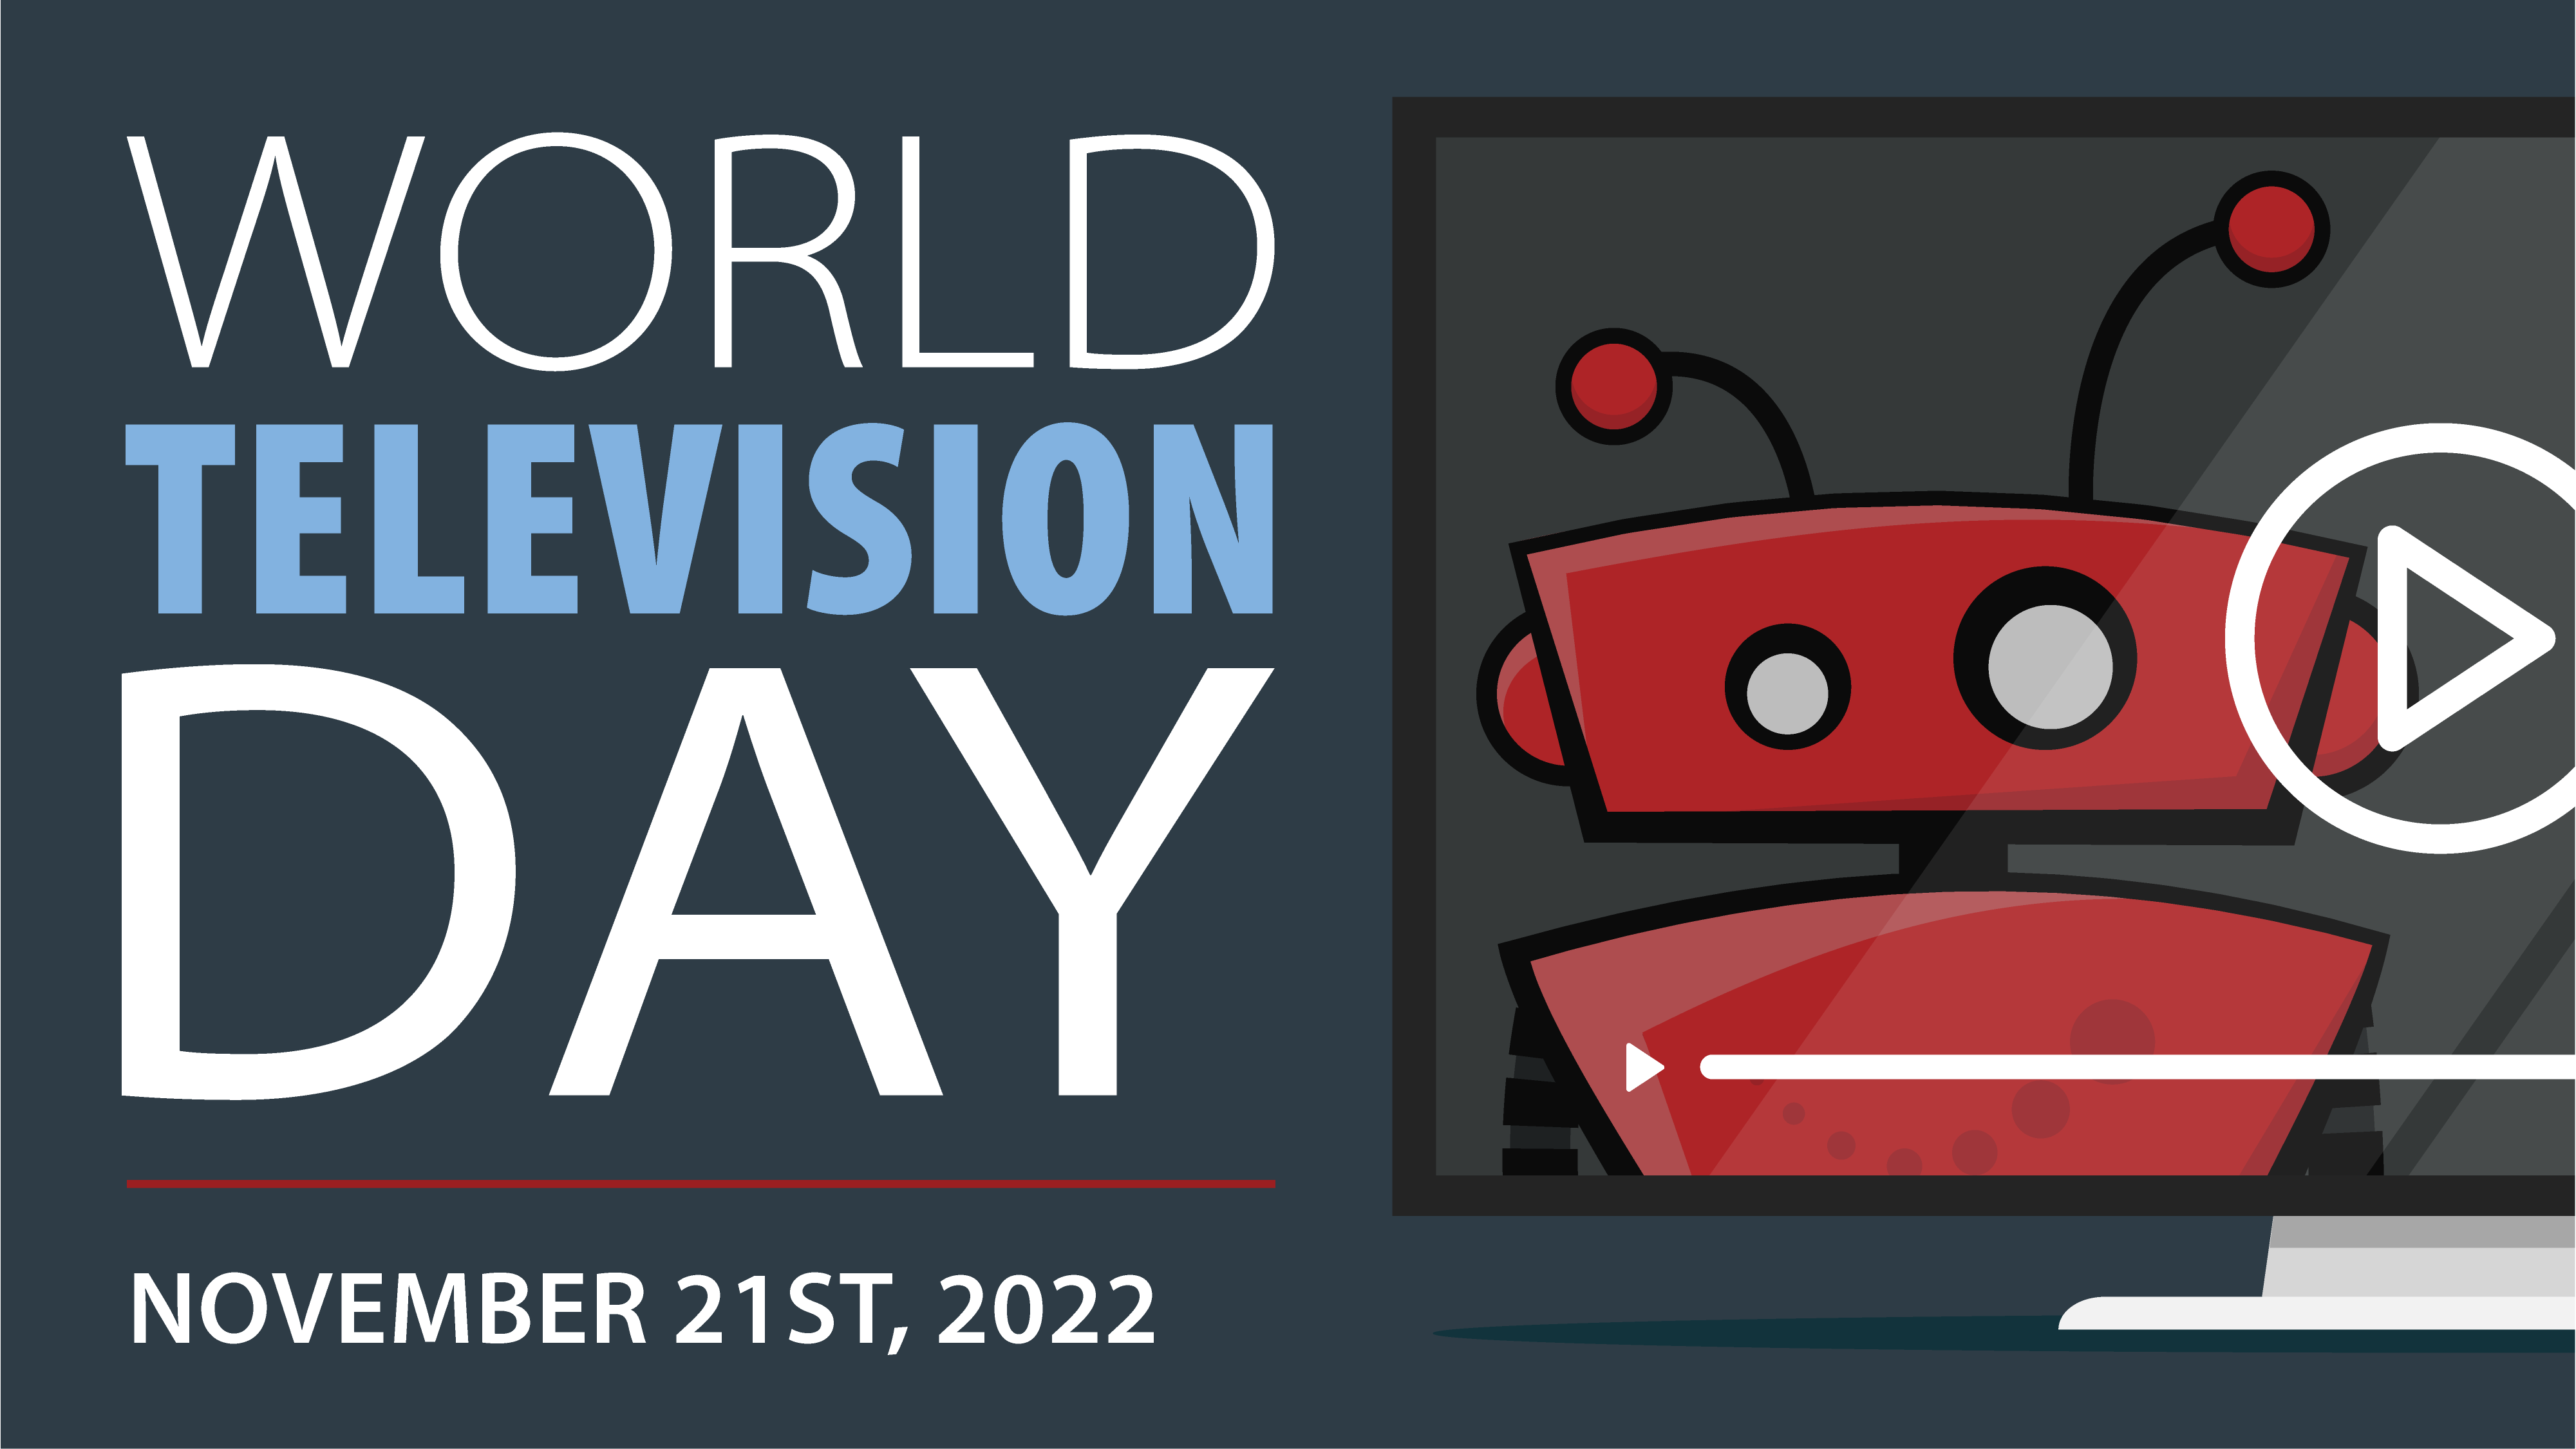 xBert robot inside a flat screen TV for World TV Day